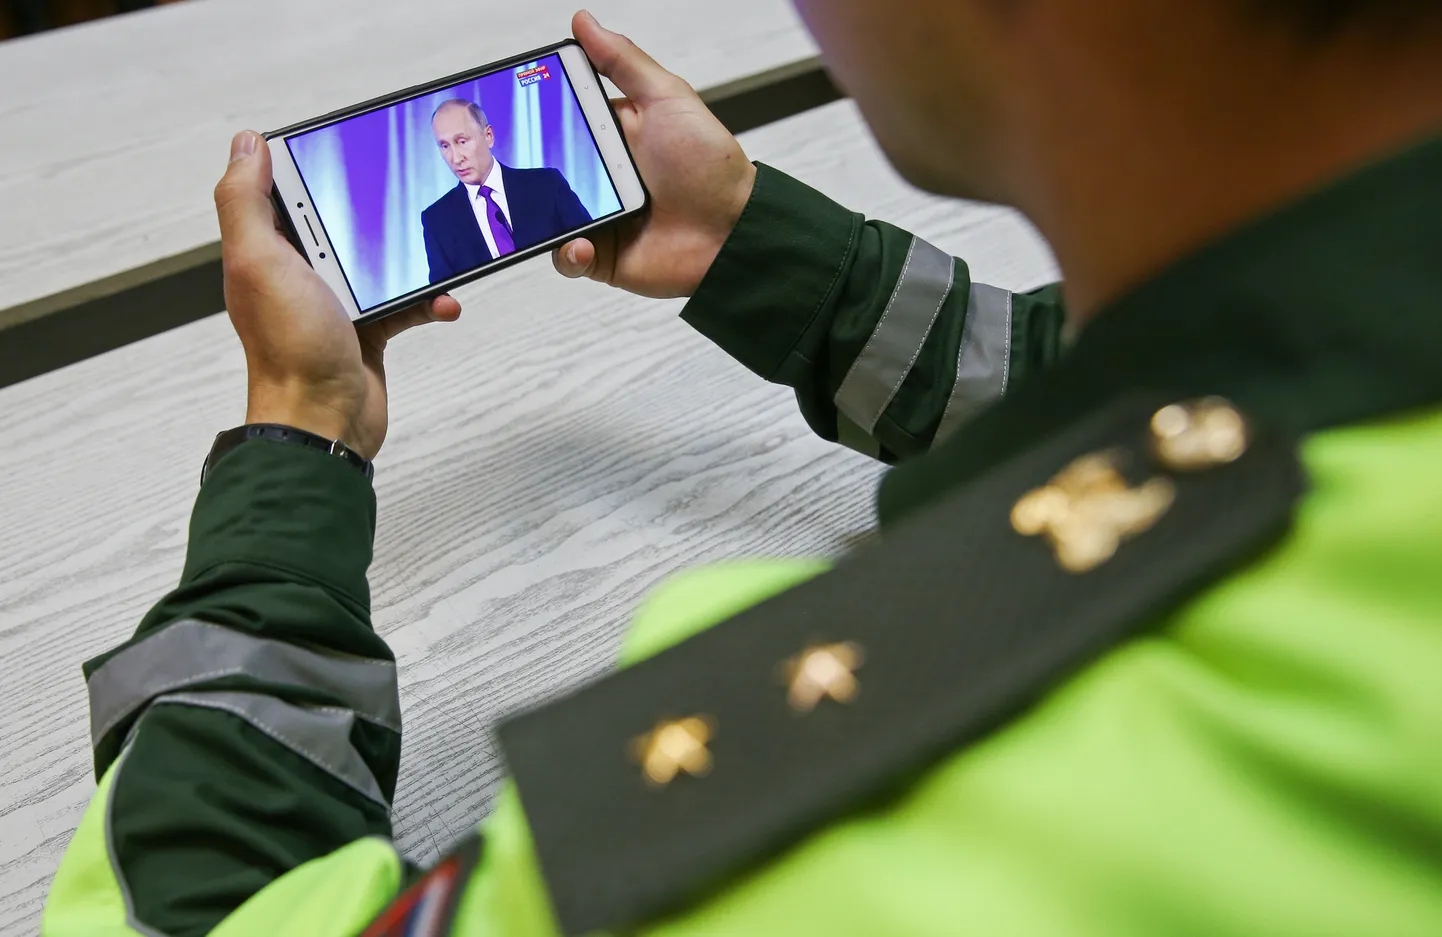 Venemaa sõjaväe autoinspektsiooni teenistuja vaatab telefonist ülekannet president Vladimir Putini kõnest Valdai klubi plenaaristungil